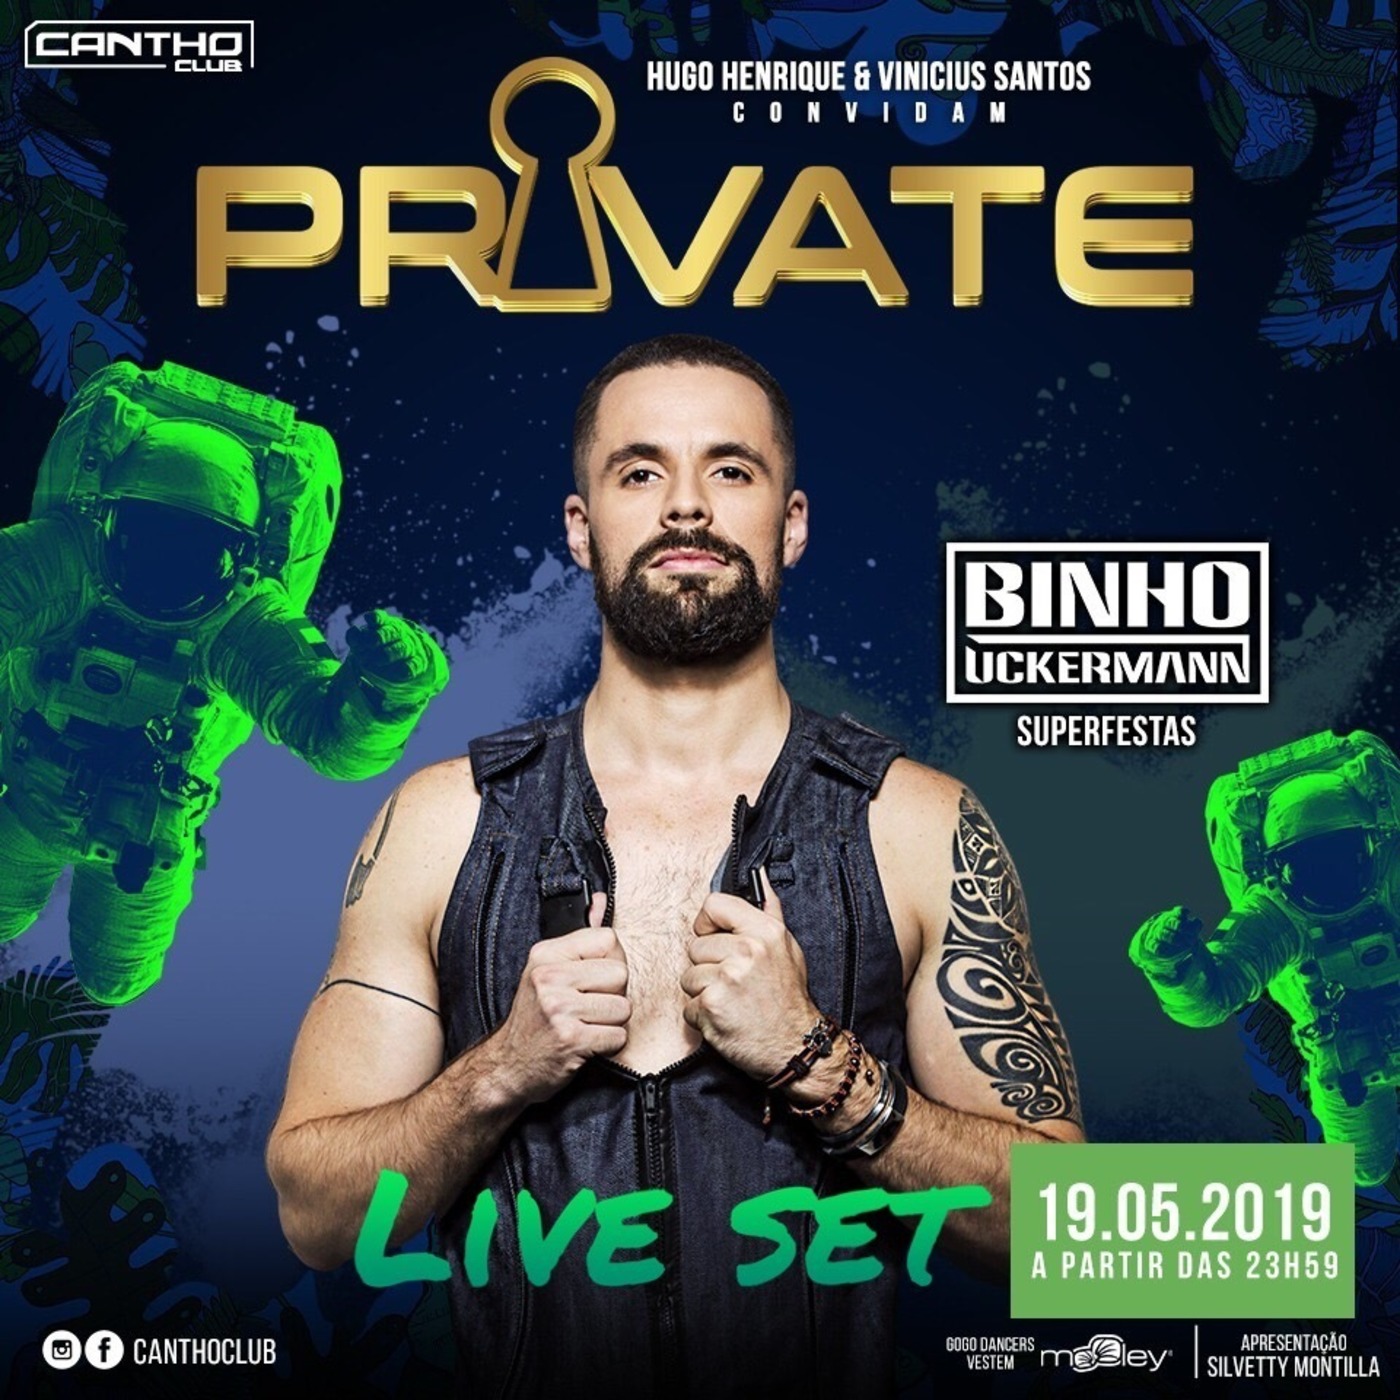 Live Set Private Cantho Club São Paulo/Brazil